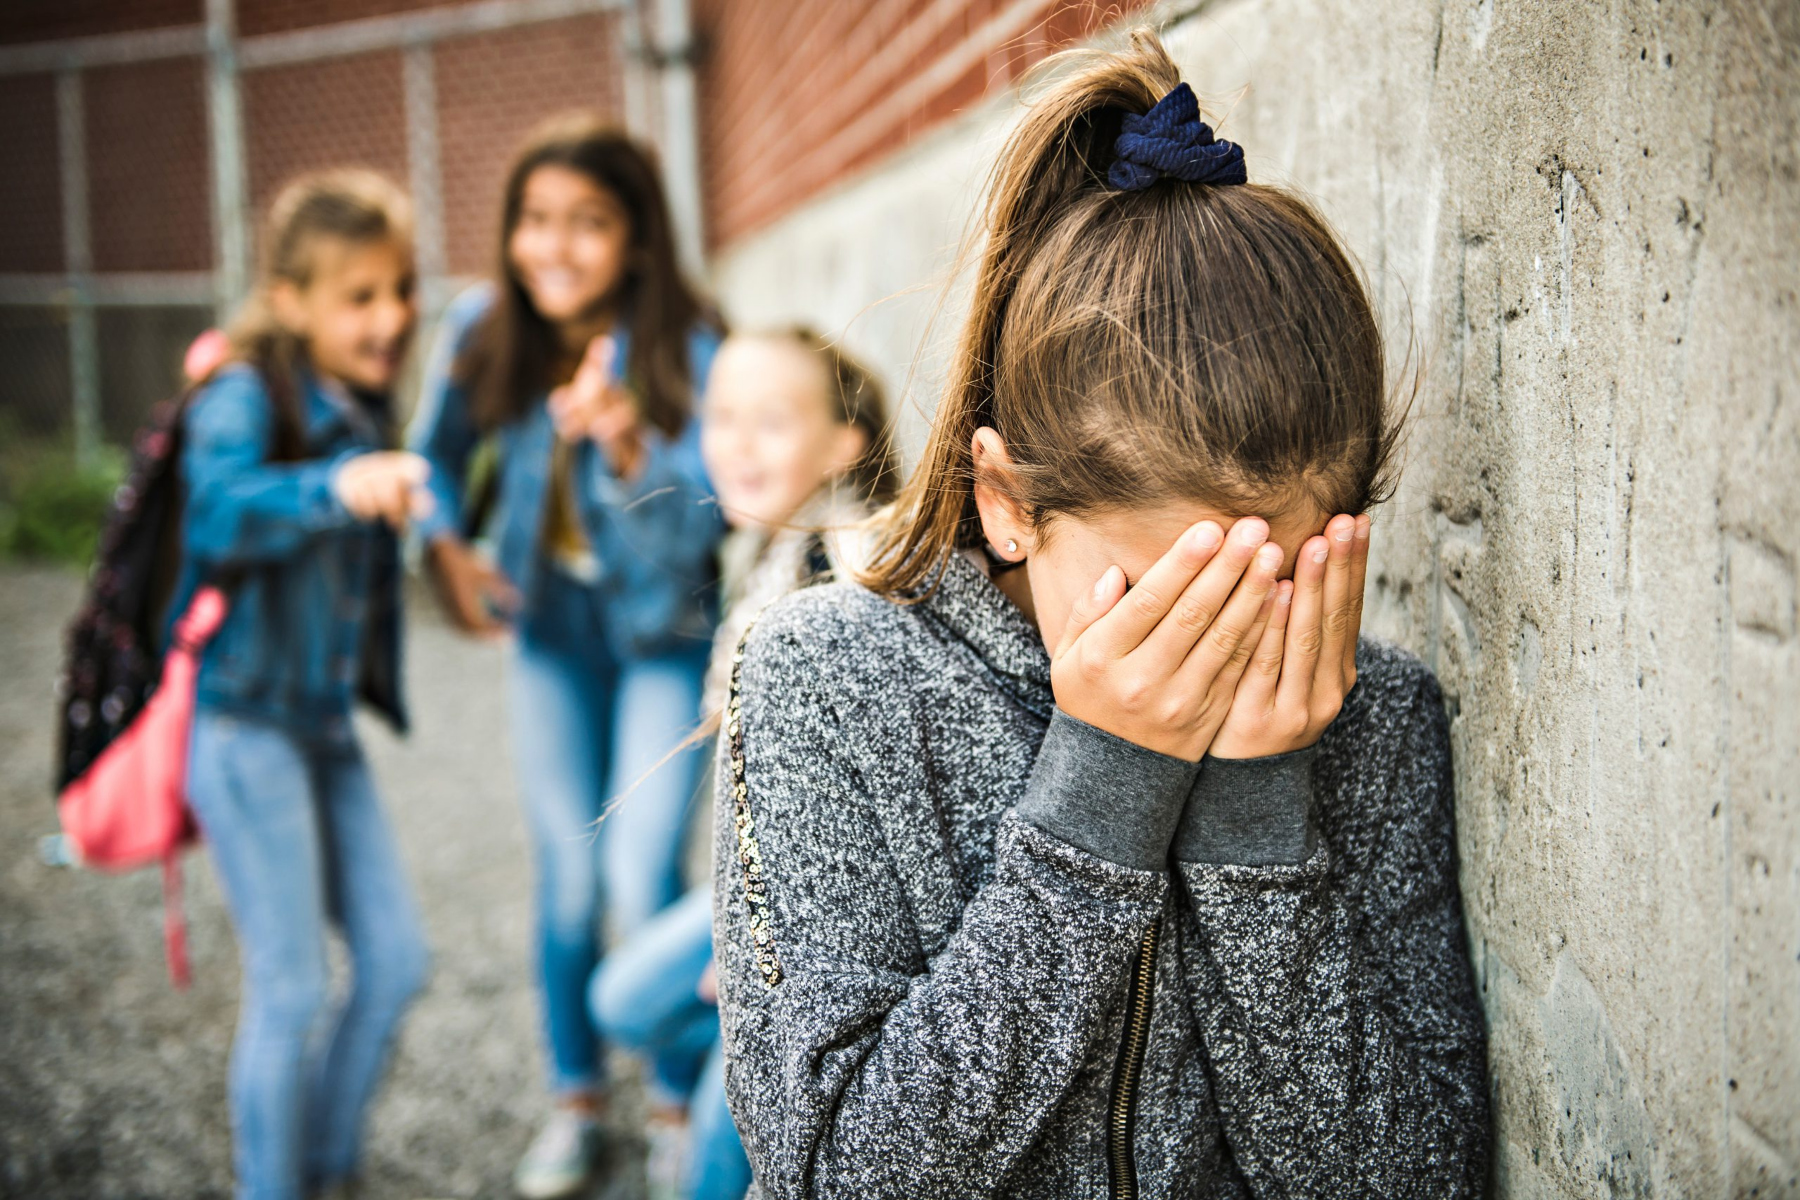 Σχολικός εκφοβισμός: Πώς ο εκφοβισμός επηρεάζει την ψυχική υγεία του παιδιού;